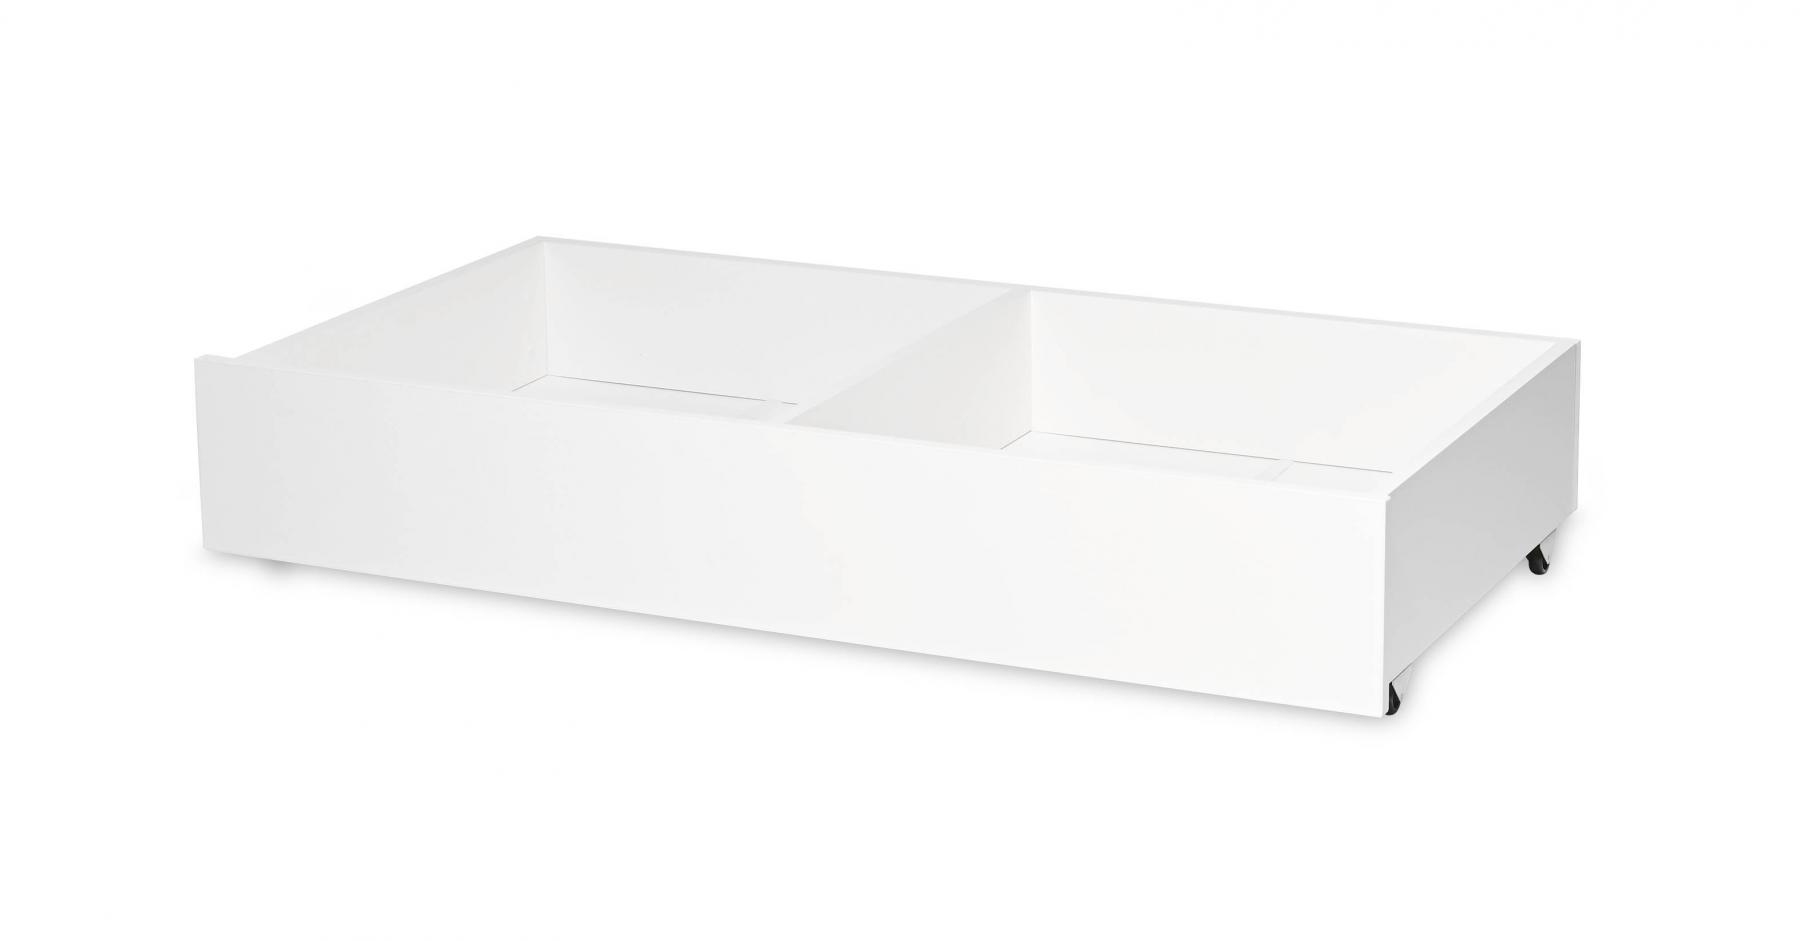 Patut modular multifunctional, 5 configurari diferite, 190 x 72 cm, Multi, White & Amber